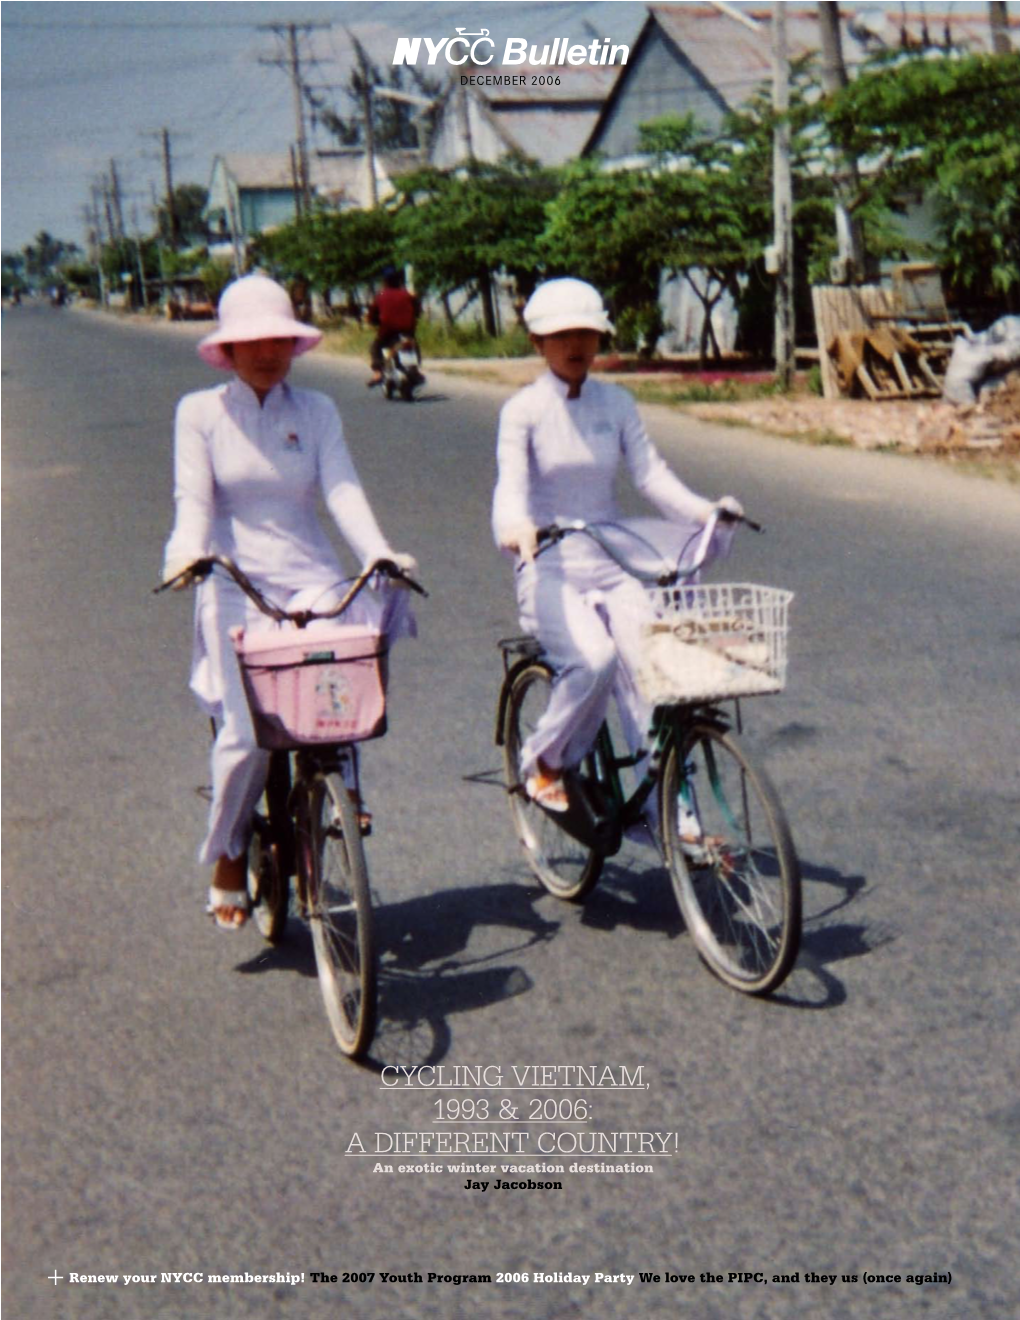 Cycling Vietnam, 1993 & 2006